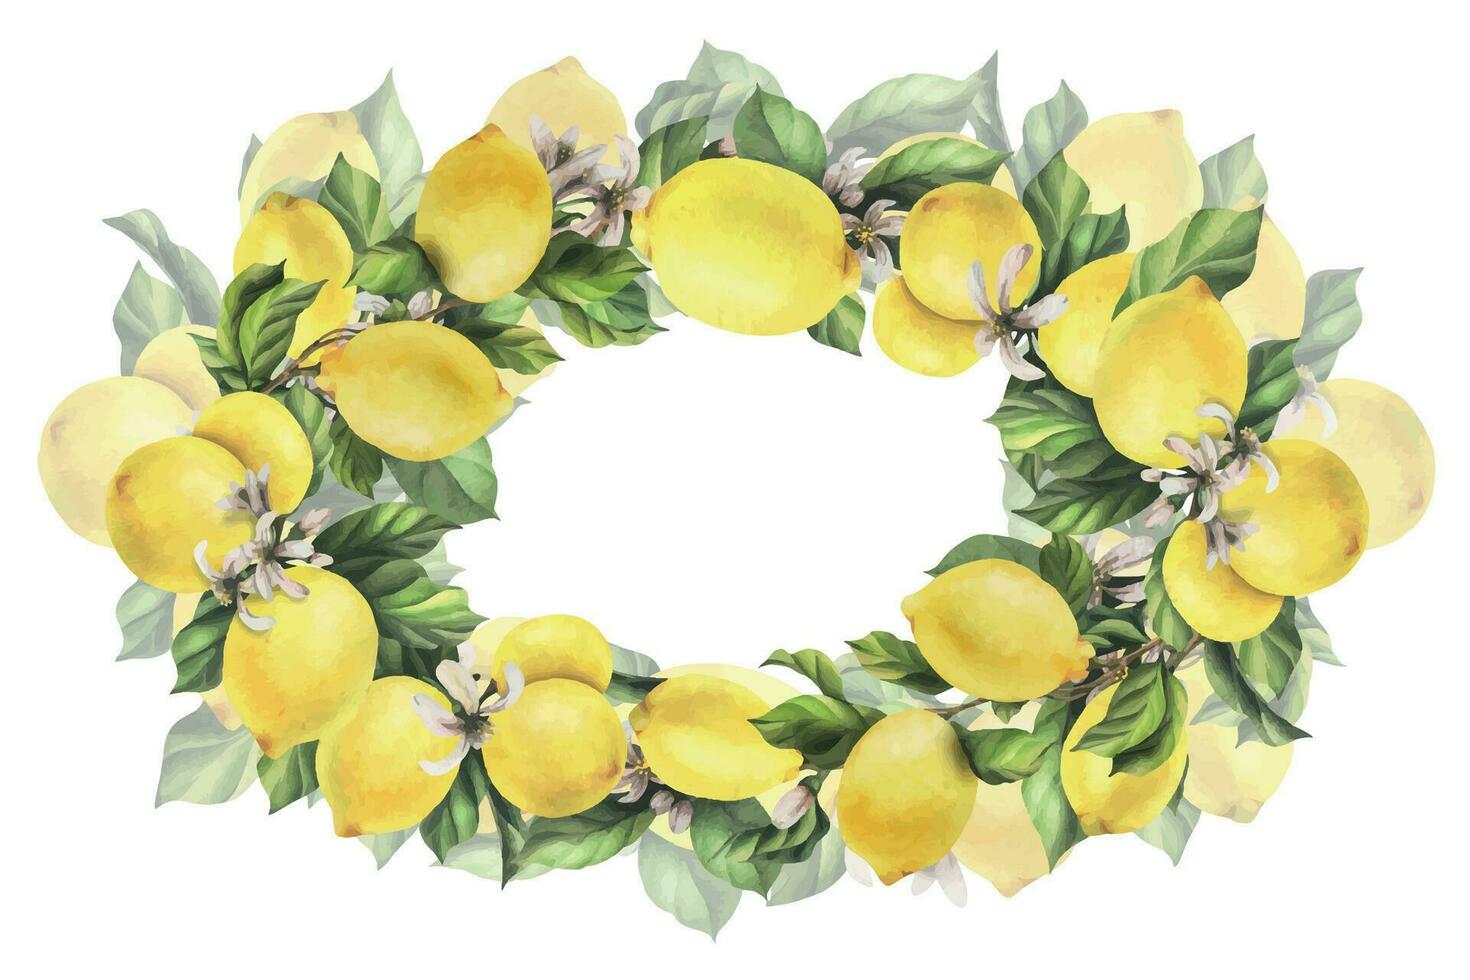 citroner är gul, saftig, mogen med grön löv, blomma knoppar på de grenar, hela och skivor. vattenfärg, hand dragen botanisk illustration. oval ram, krans, mall på en vit bakgrund. vektor